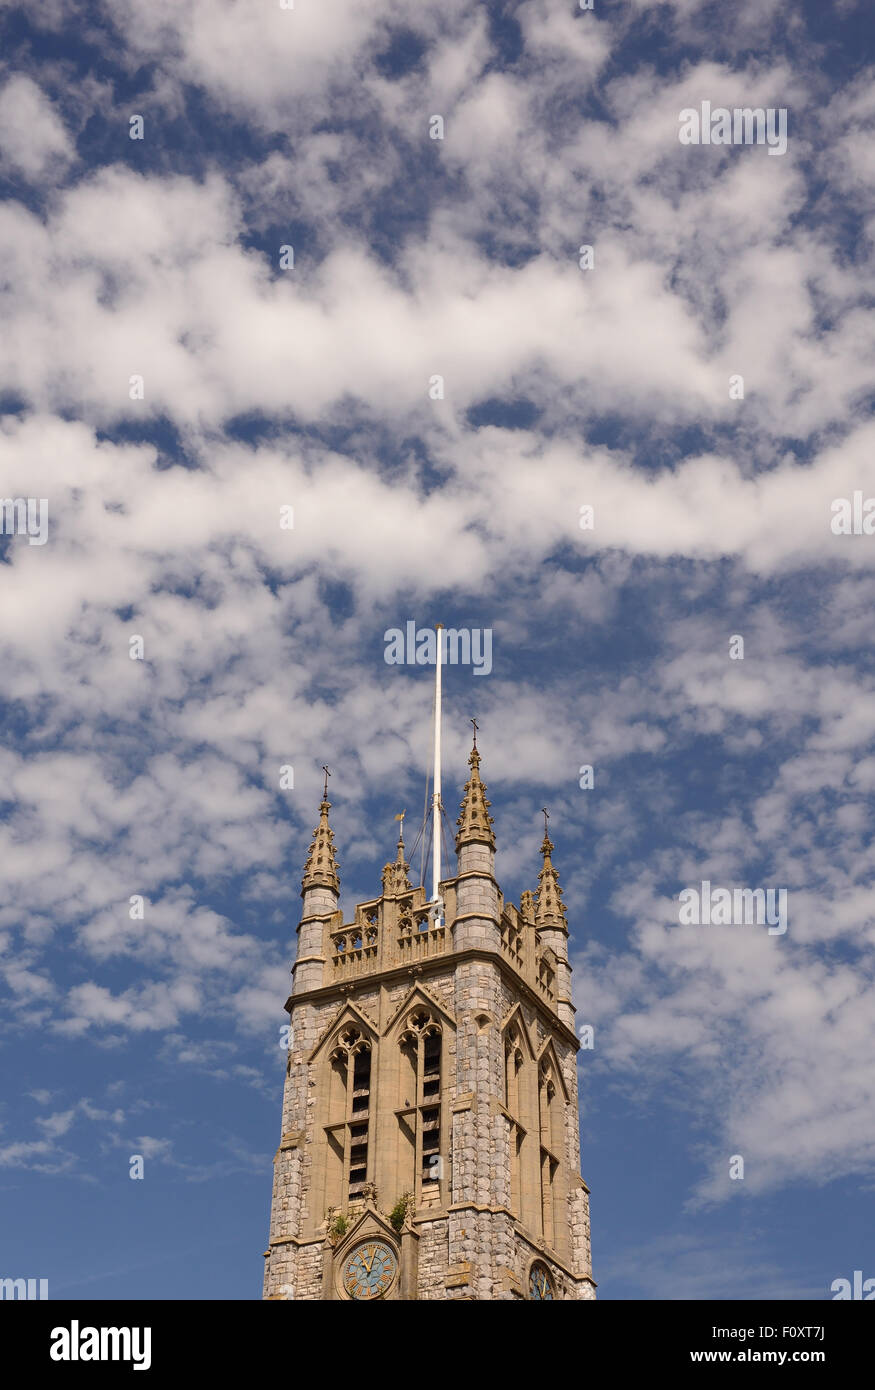 La formation de nuages sur le clocher de l'église de Saint Michel Archange. Banque D'Images